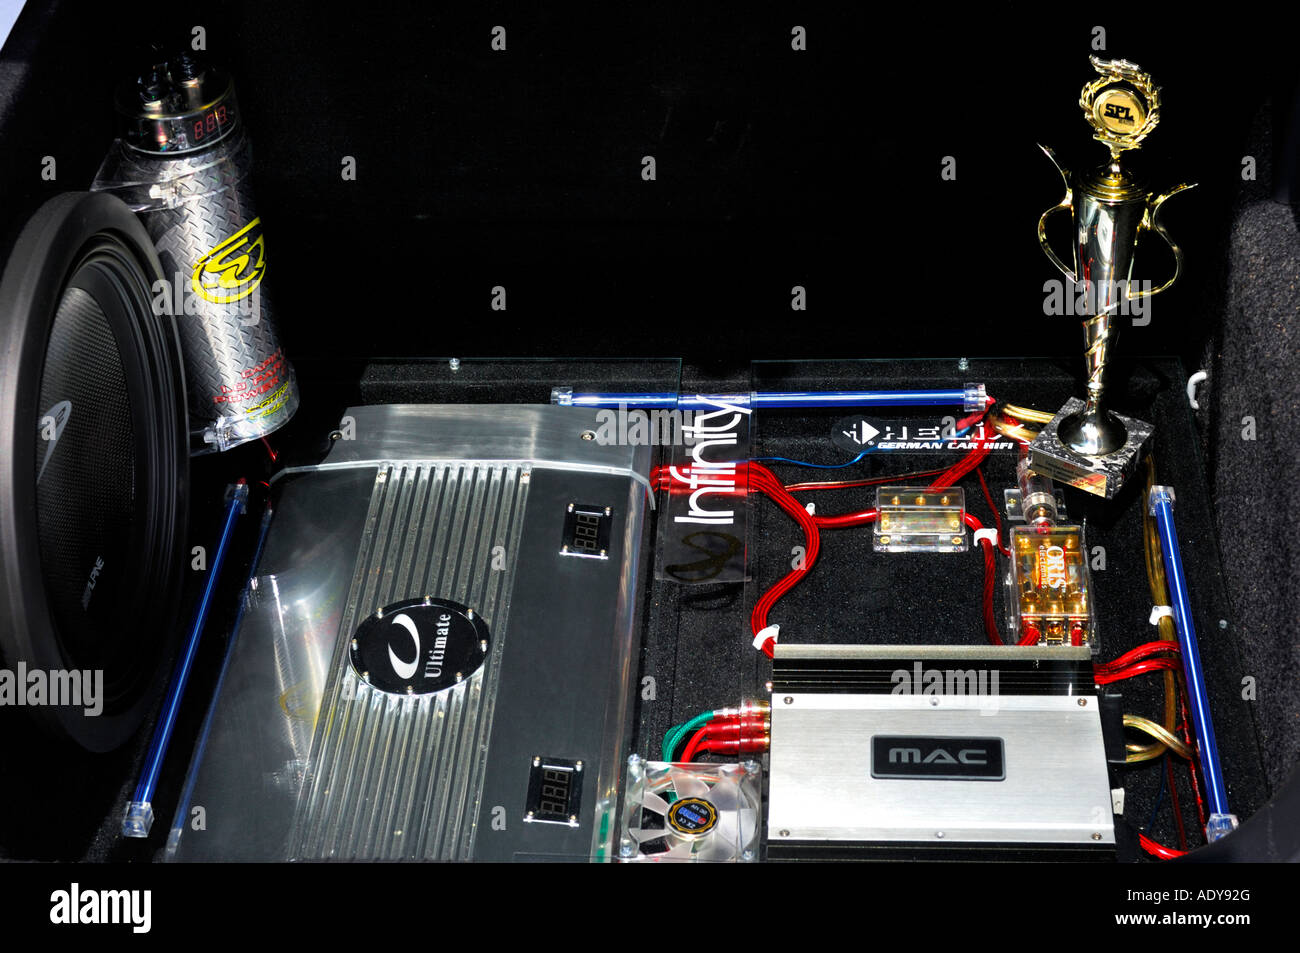 Audio auto amplifier car fotografías e imágenes de alta resolución - Alamy